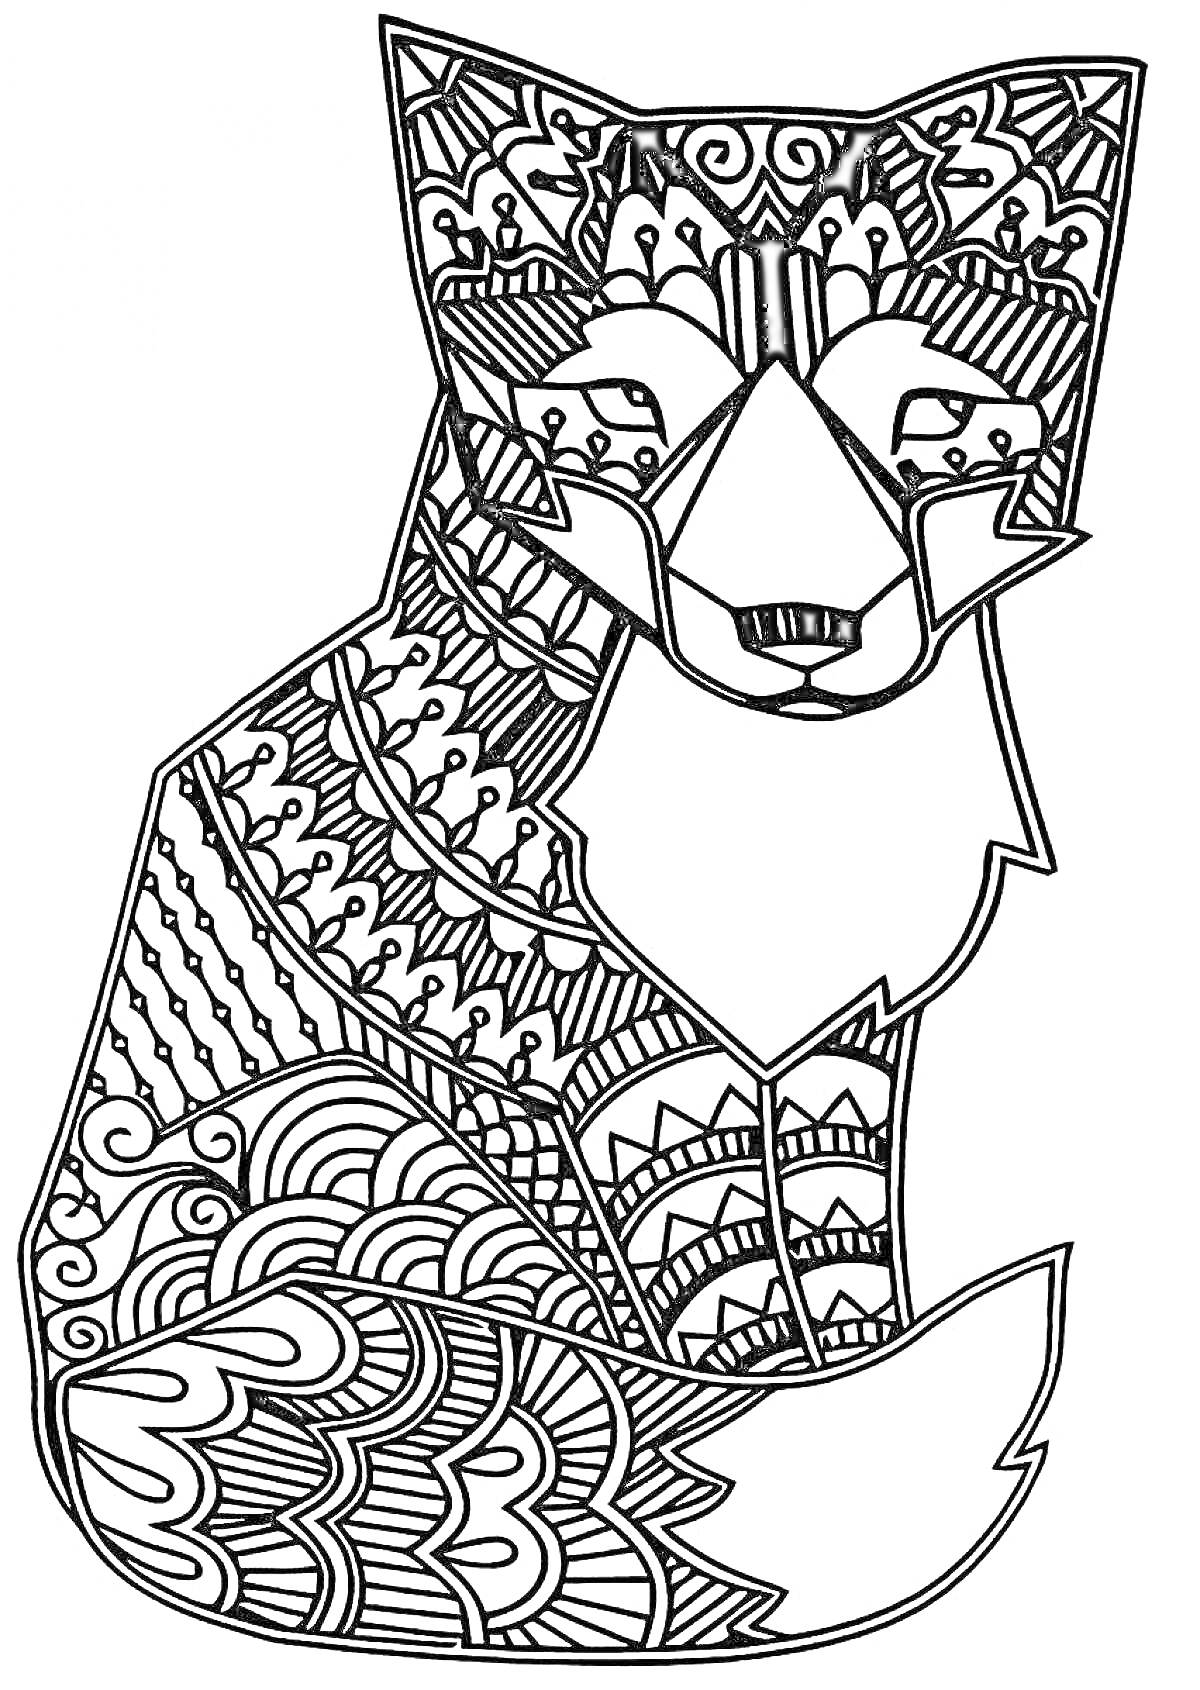 Раскраска Лиса антистресс с декоративными узорами, включающими завитки, волны, линии и геометрические элементы.